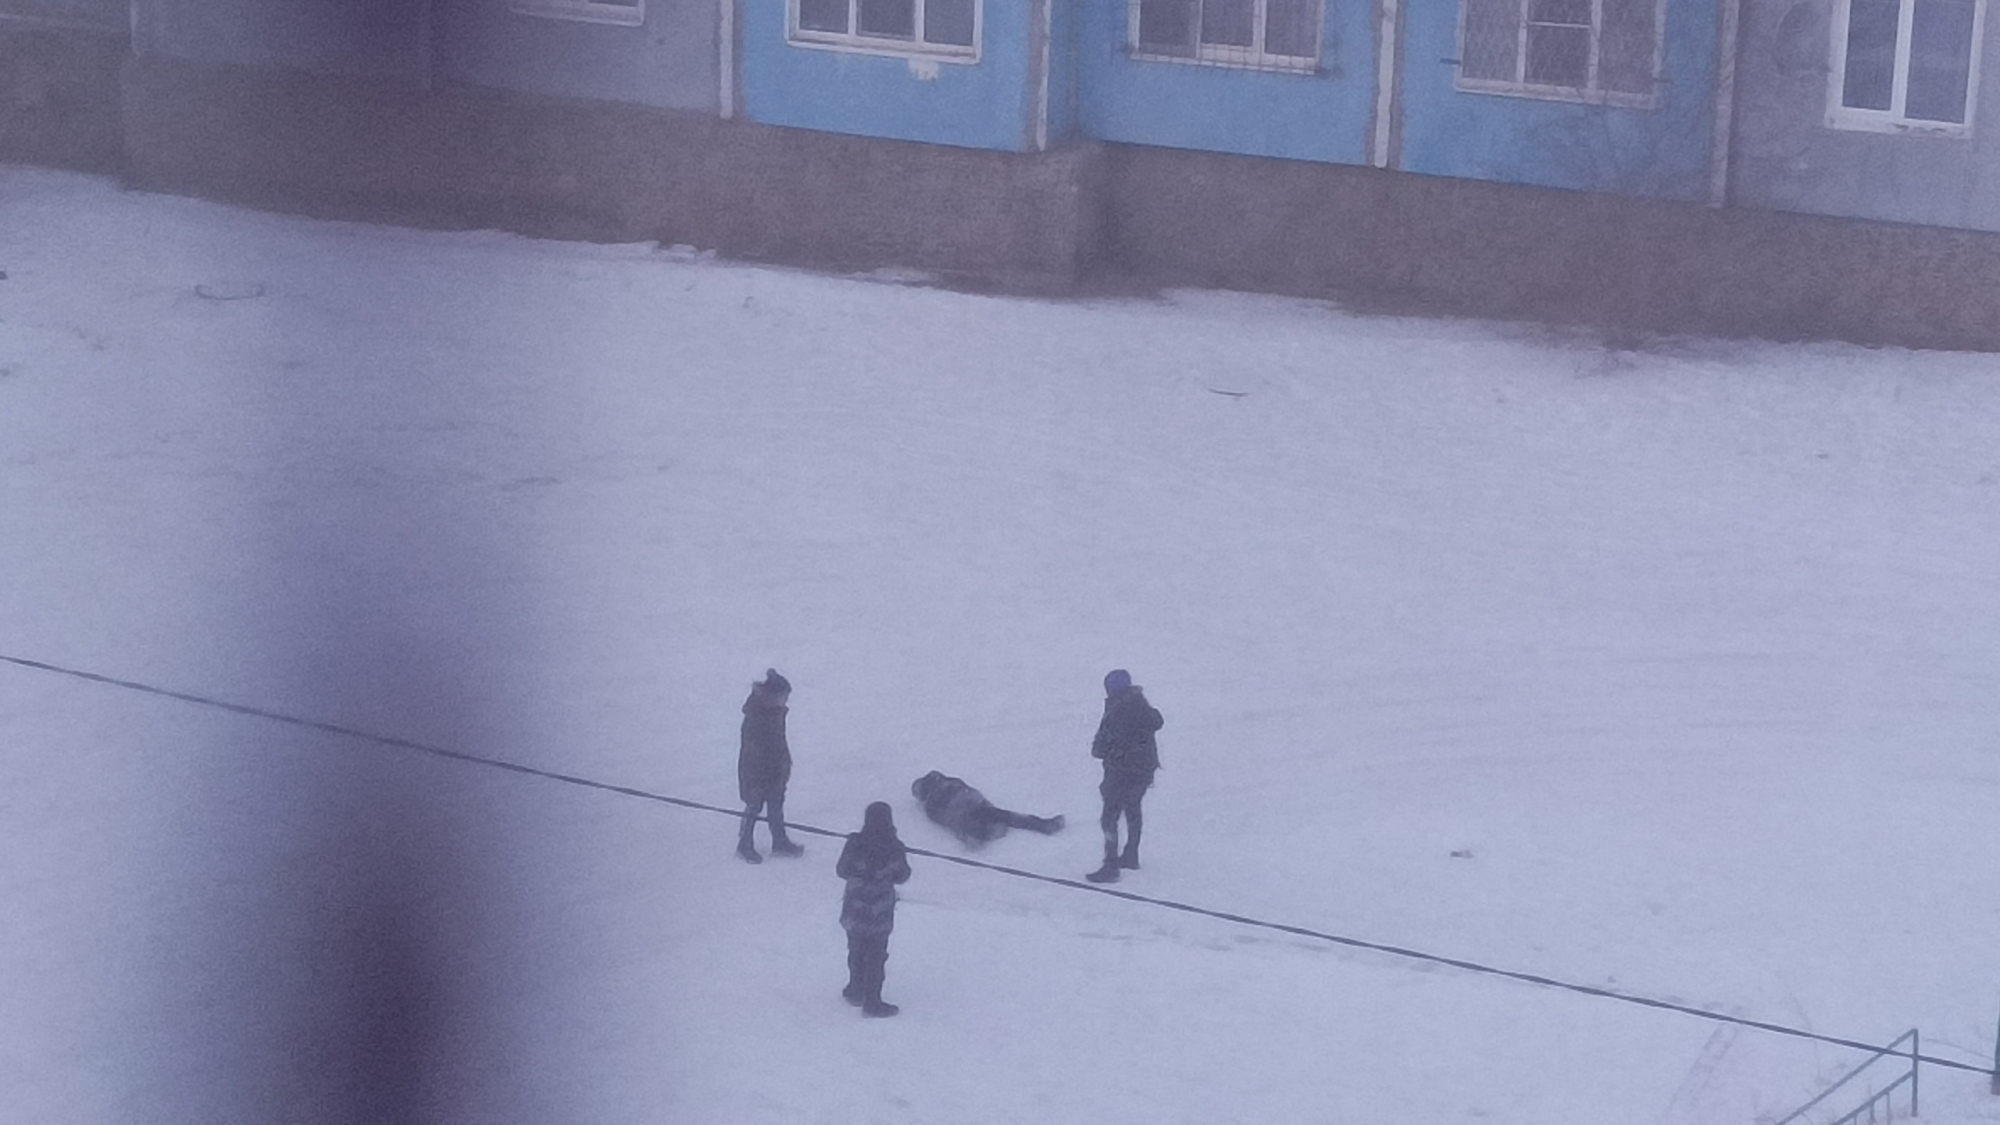 Фото В Селенгинском районе Бурятии подростки издевались над лежащим на снегу мальчиком